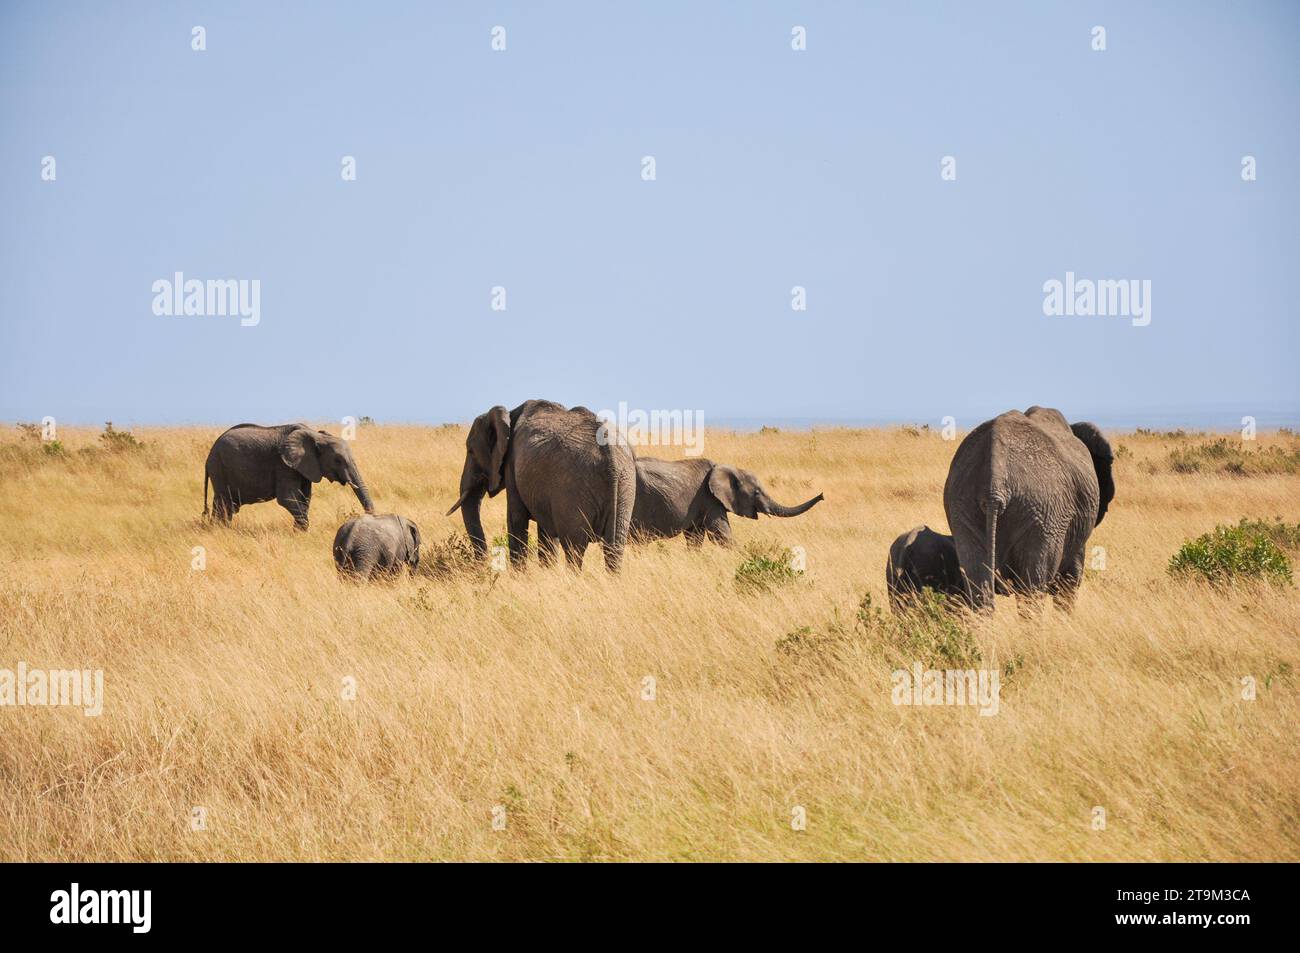 Maestoso elefante che vagava per la savana africana. Fotografare la fauna selvatica nella riserva naturale. Foto Stock